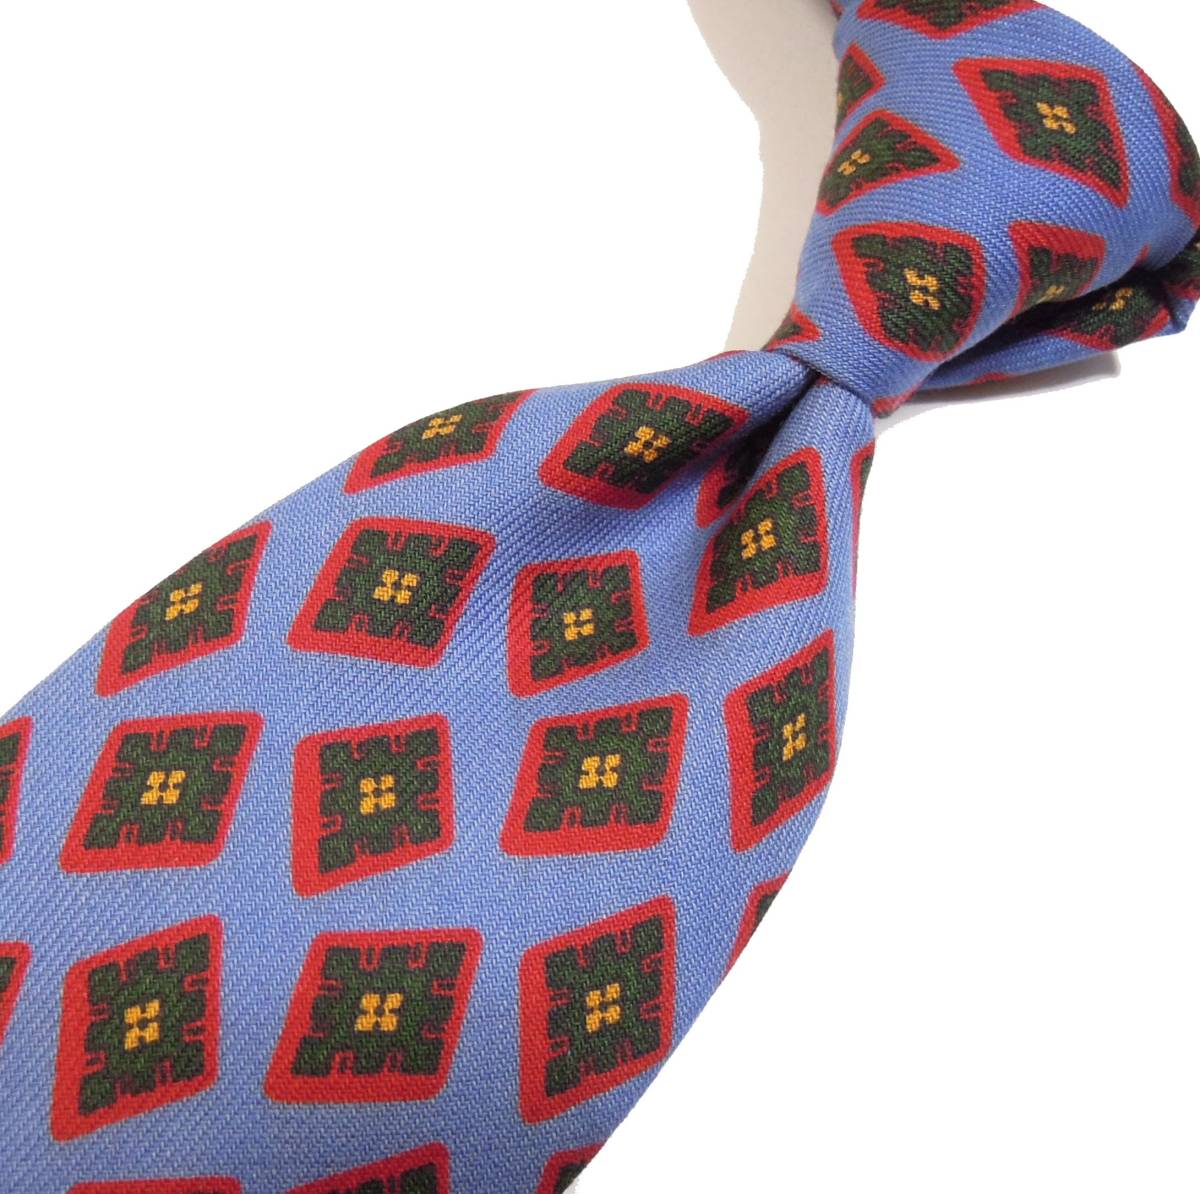  новый товар обычная цена 23,100 иен Nicky /ni ключ шерсть Club мелкий рисунок рисунок галстук лиловый -тактный lasbrugo покупка Италия производства 